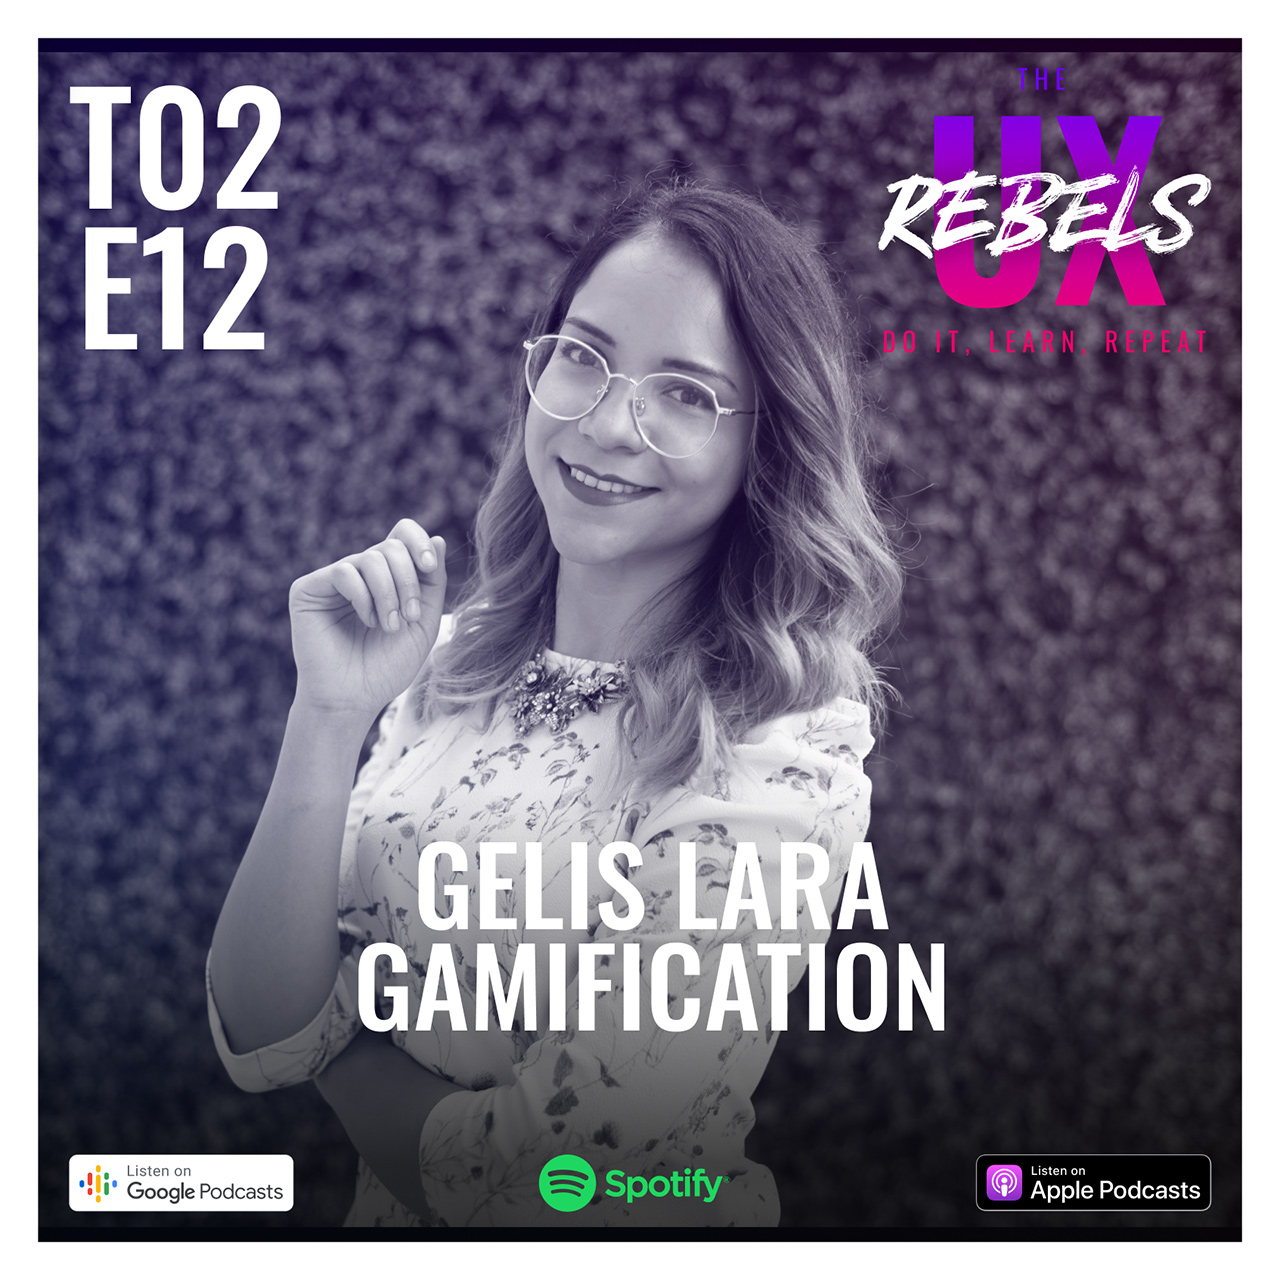 Escucha episodio sobre gamificación con Gelis Lara